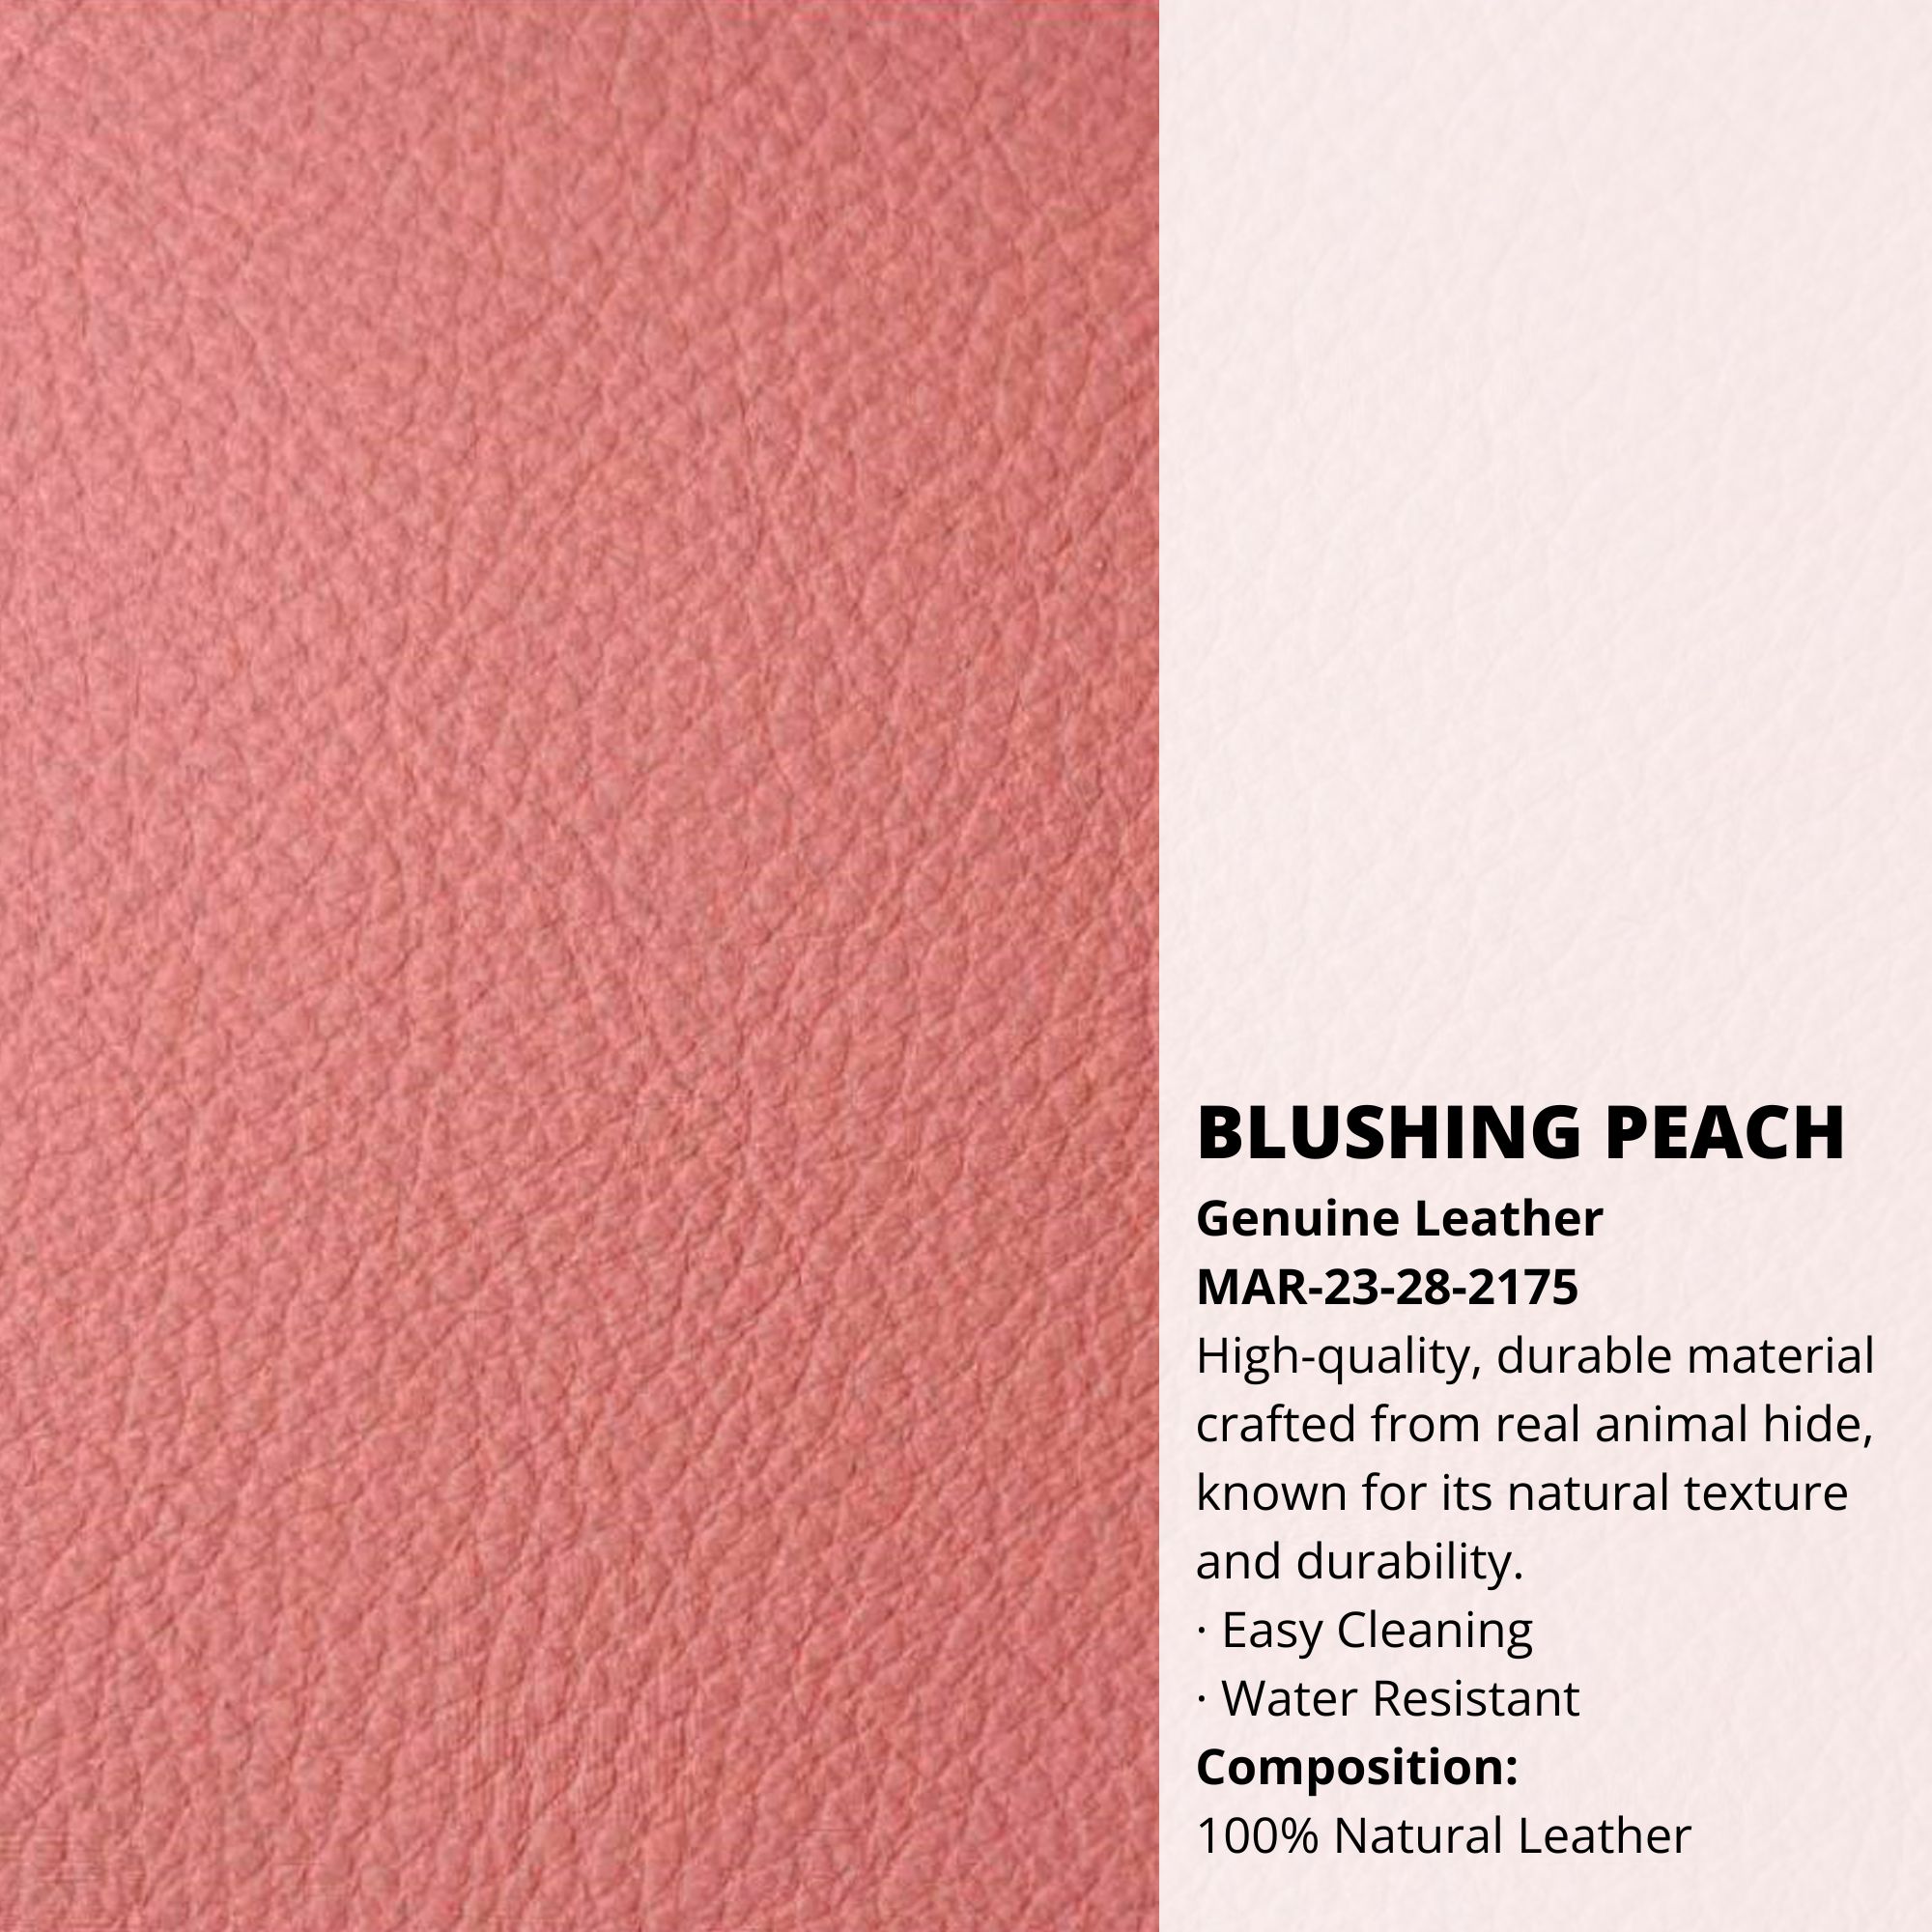 Blushing Peach